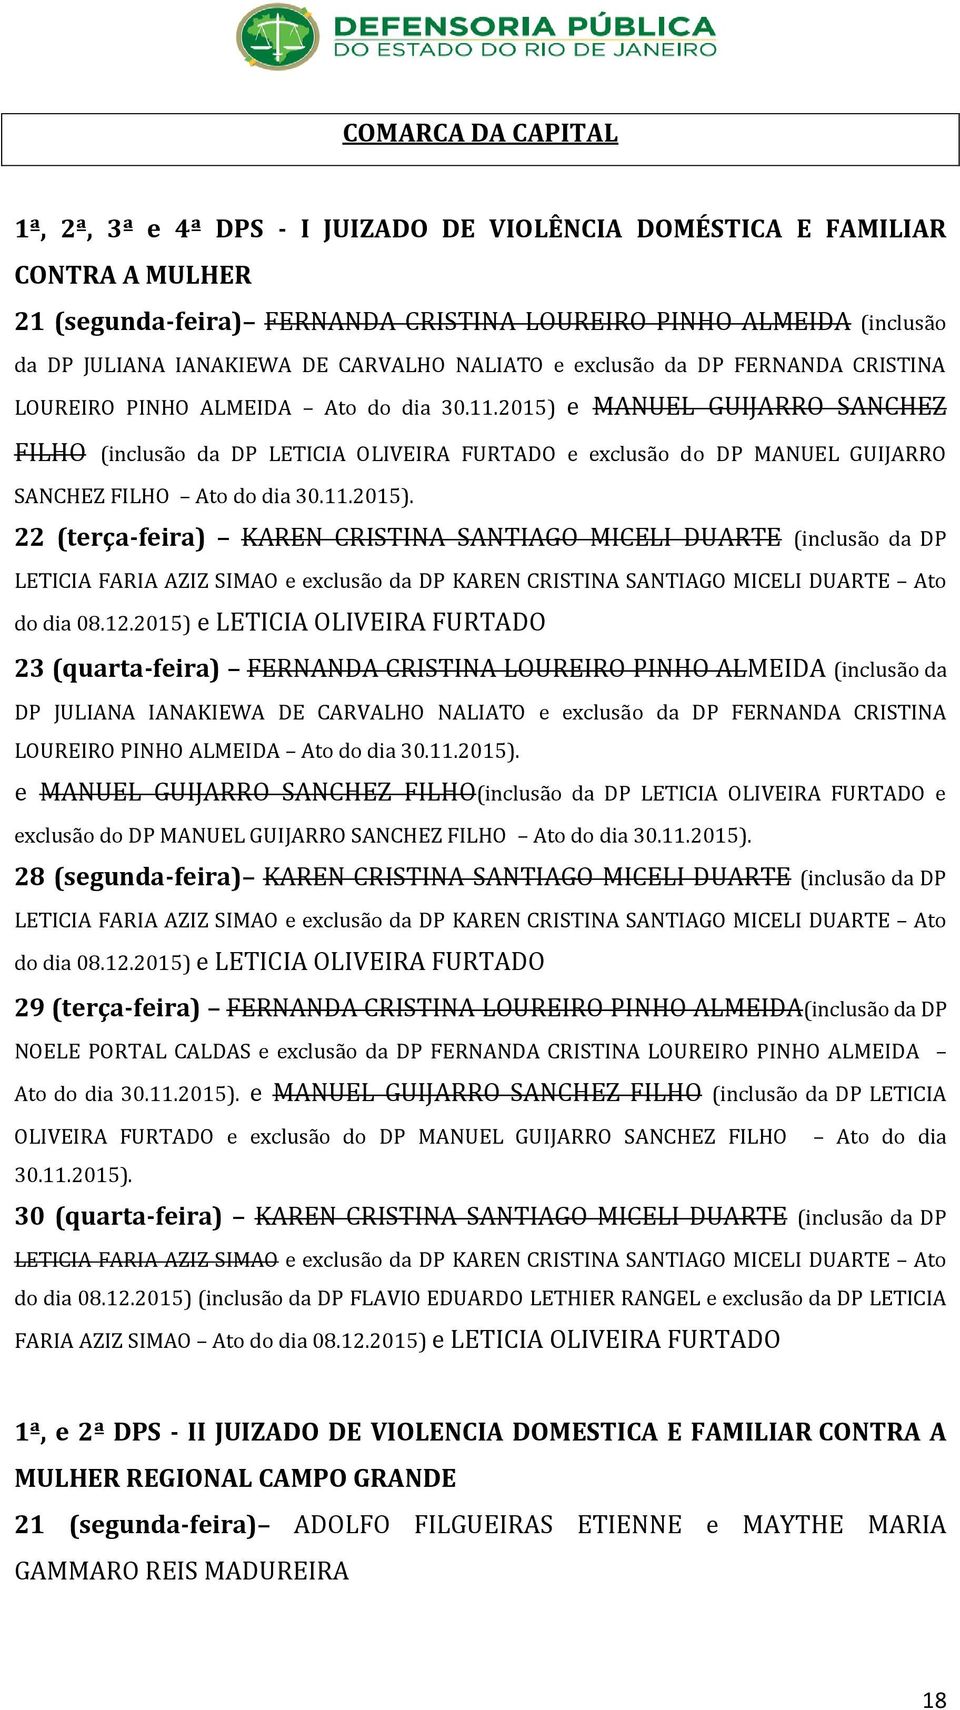 2015) e MANUEL GUIJARRO SANCHEZ FILHO (inclusão da DP LETICIA OLIVEIRA FURTADO e exclusão do DP MANUEL GUIJARRO SANCHEZ FILHO Ato do dia 30.11.2015). 22 (terça-feira) KAREN CRISTINA SANTIAGO MICELI DUARTE (inclusão da DP LETICIA FARIA AZIZ SIMAO e exclusão da DP KAREN CRISTINA SANTIAGO MICELI DUARTE Ato do dia 08.